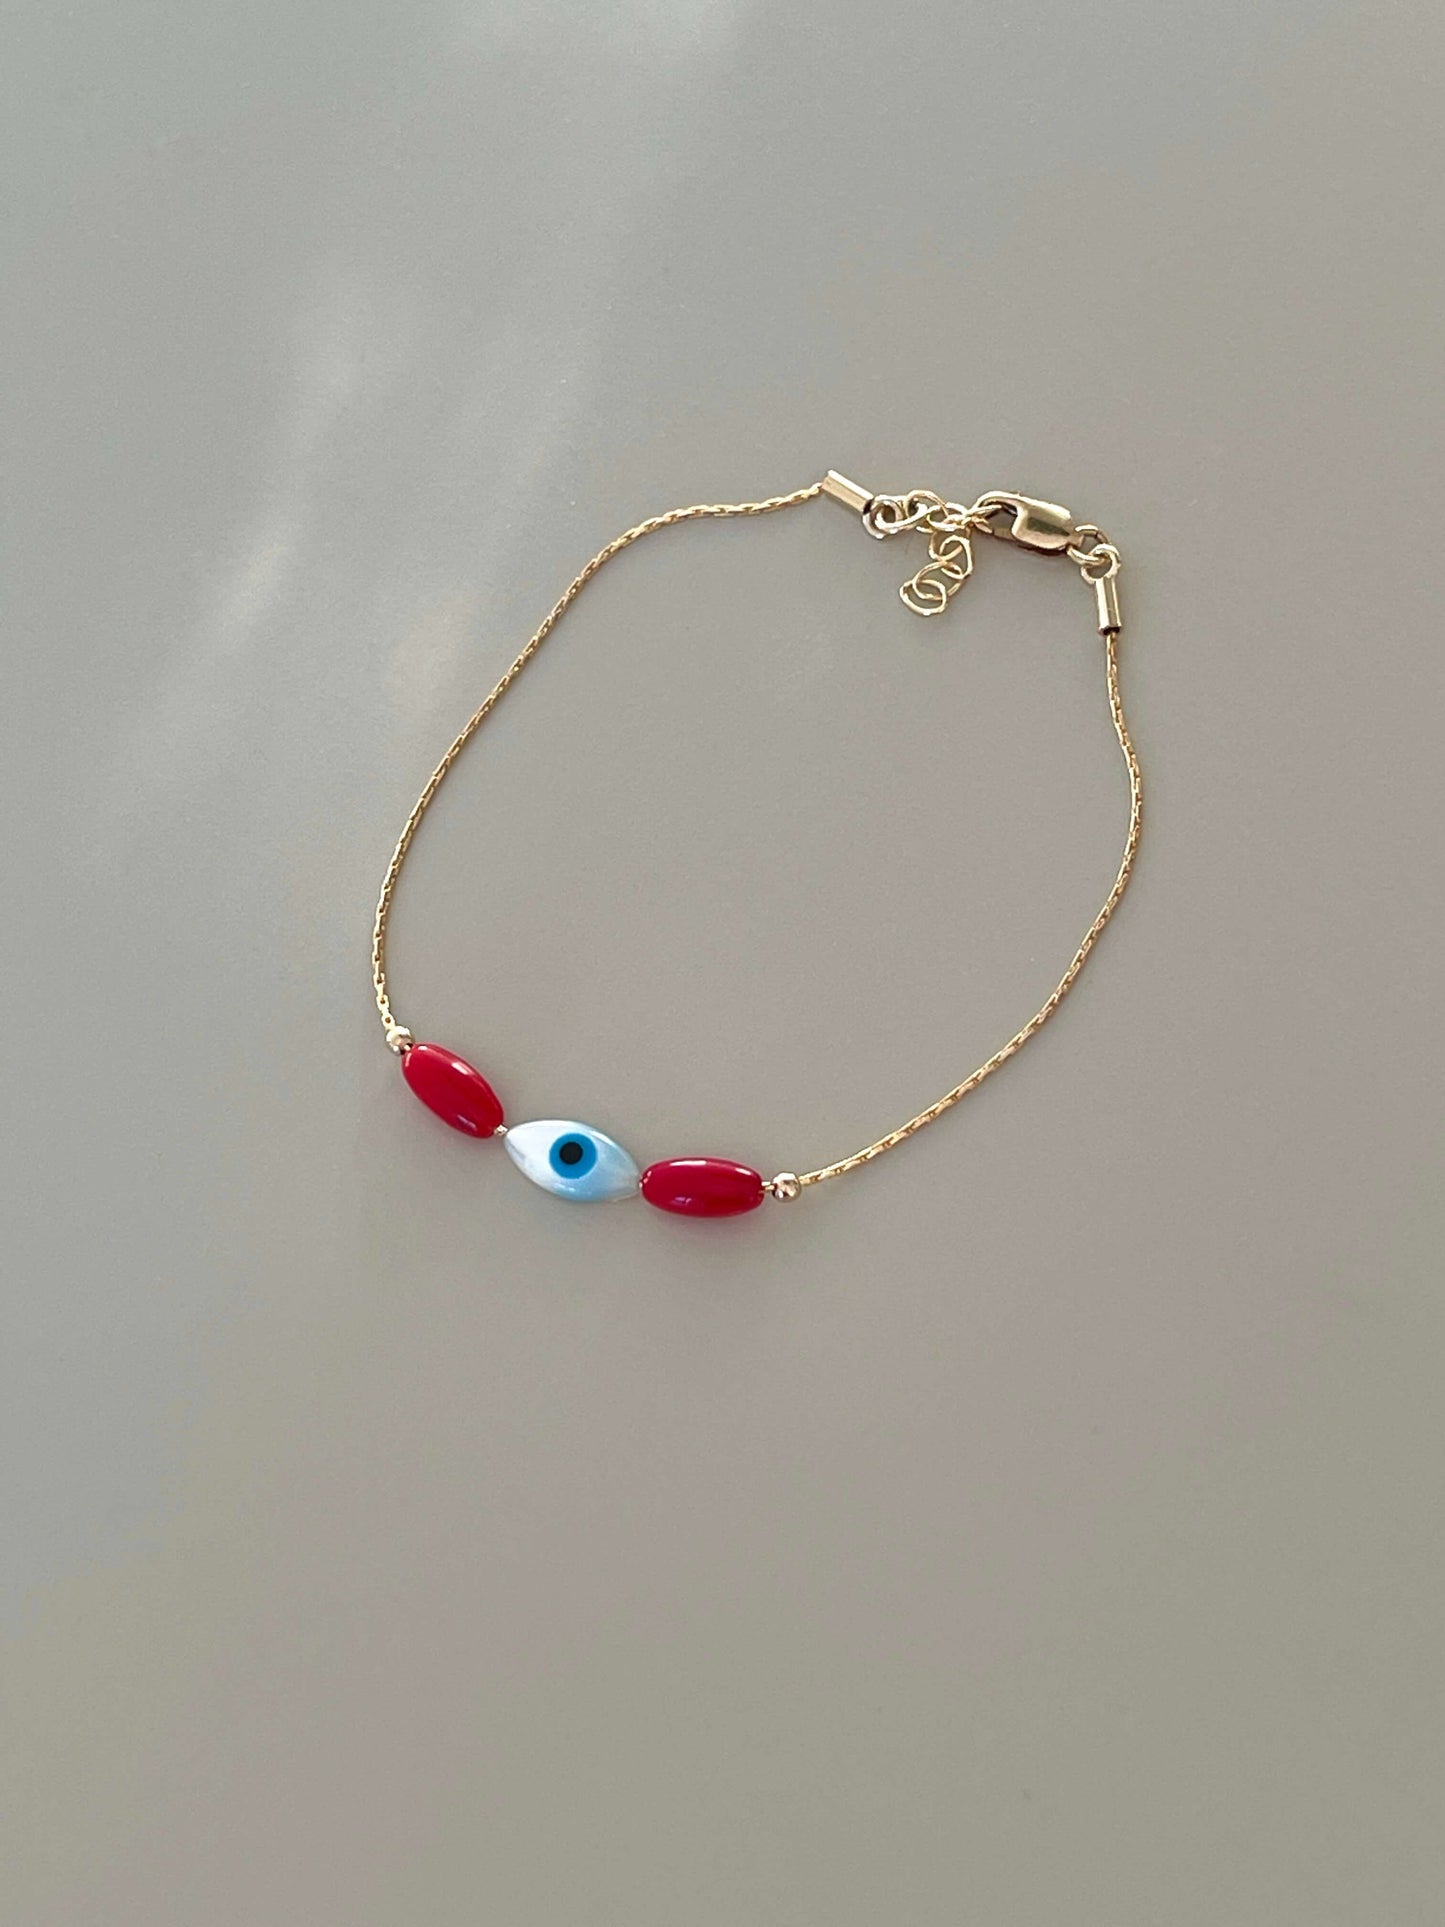 Coral Eye bracelet